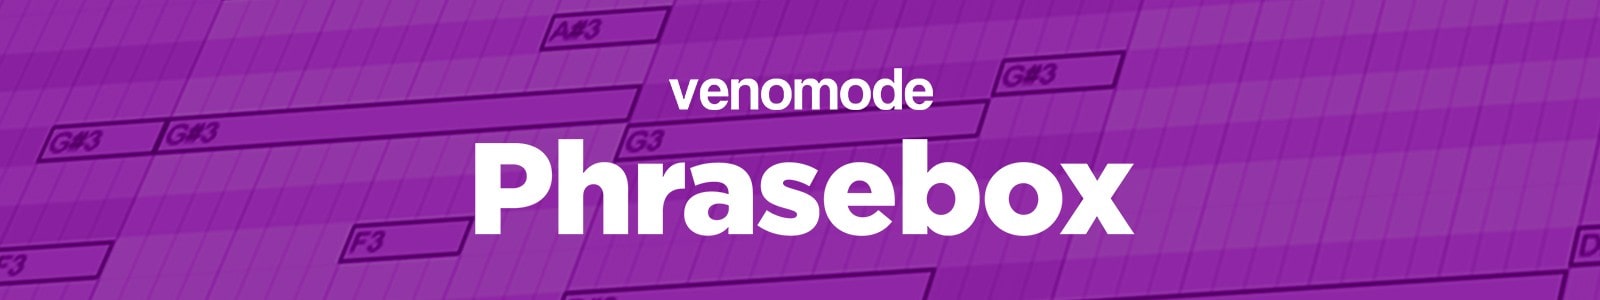 Venomode Phrasebox